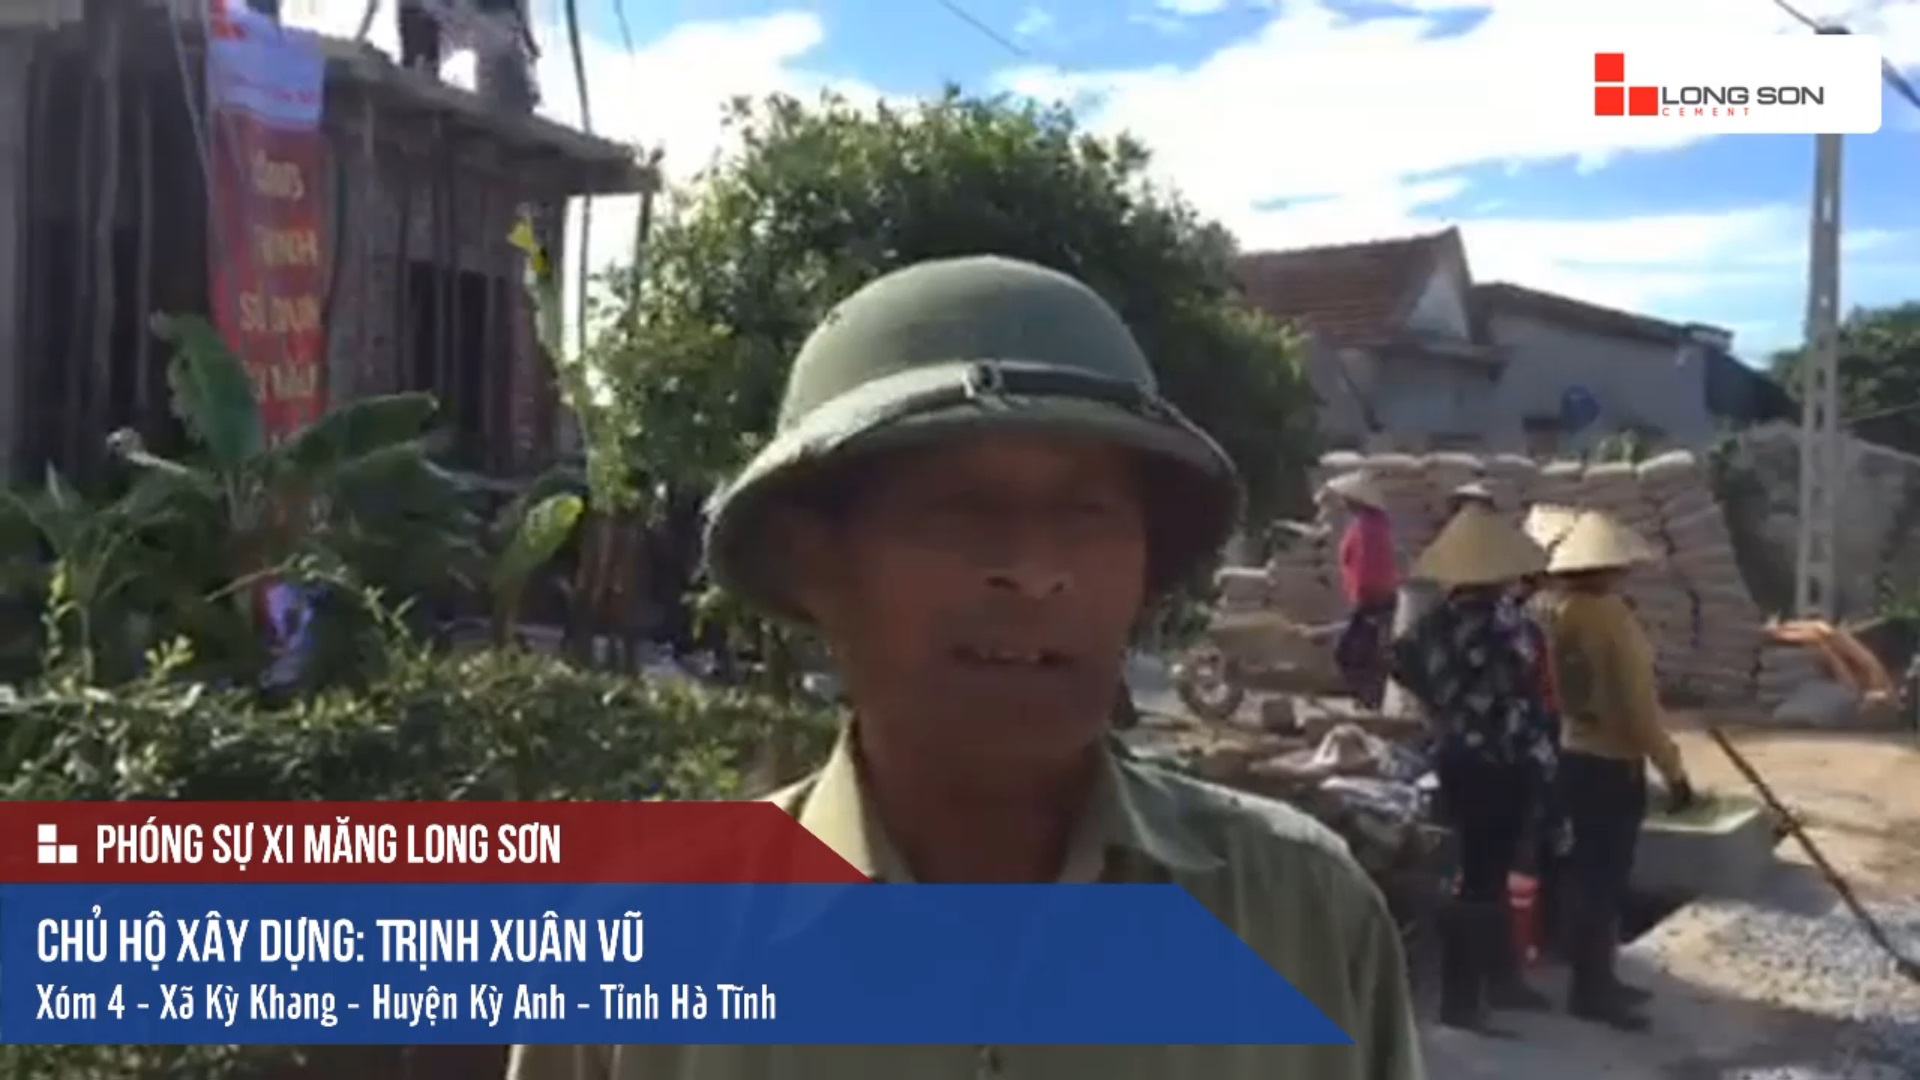 Phóng sự công trình sử dụng Xi măng Long Sơn tại Hà Tĩnh 11.06.2018